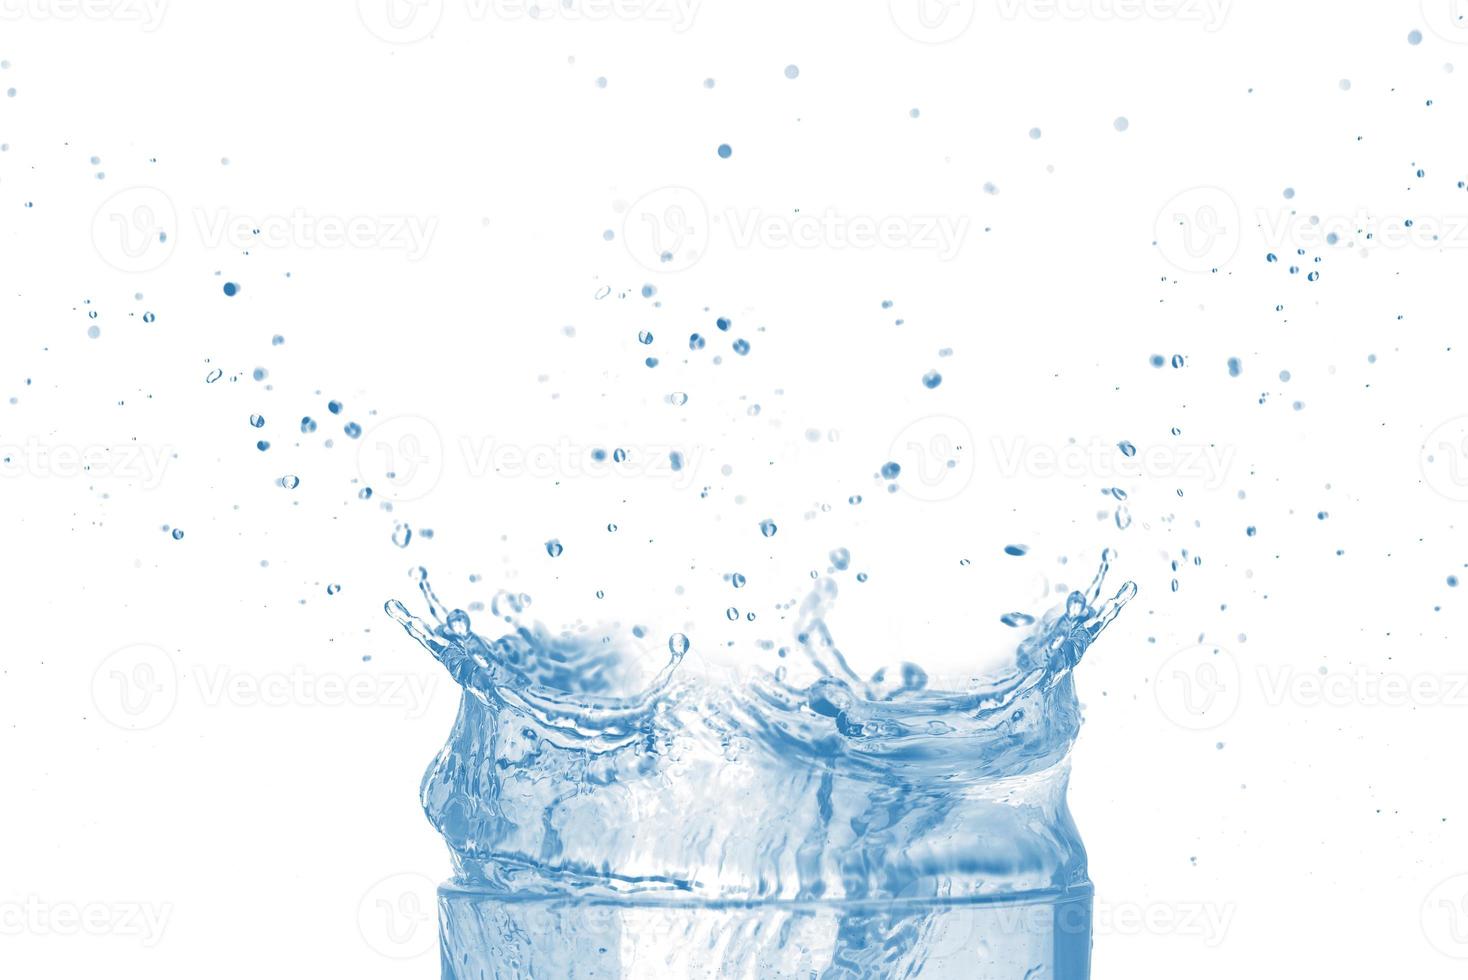 dessus du verre transparent et des éclaboussures d'eau bleue isolées sur fond blanc. photo